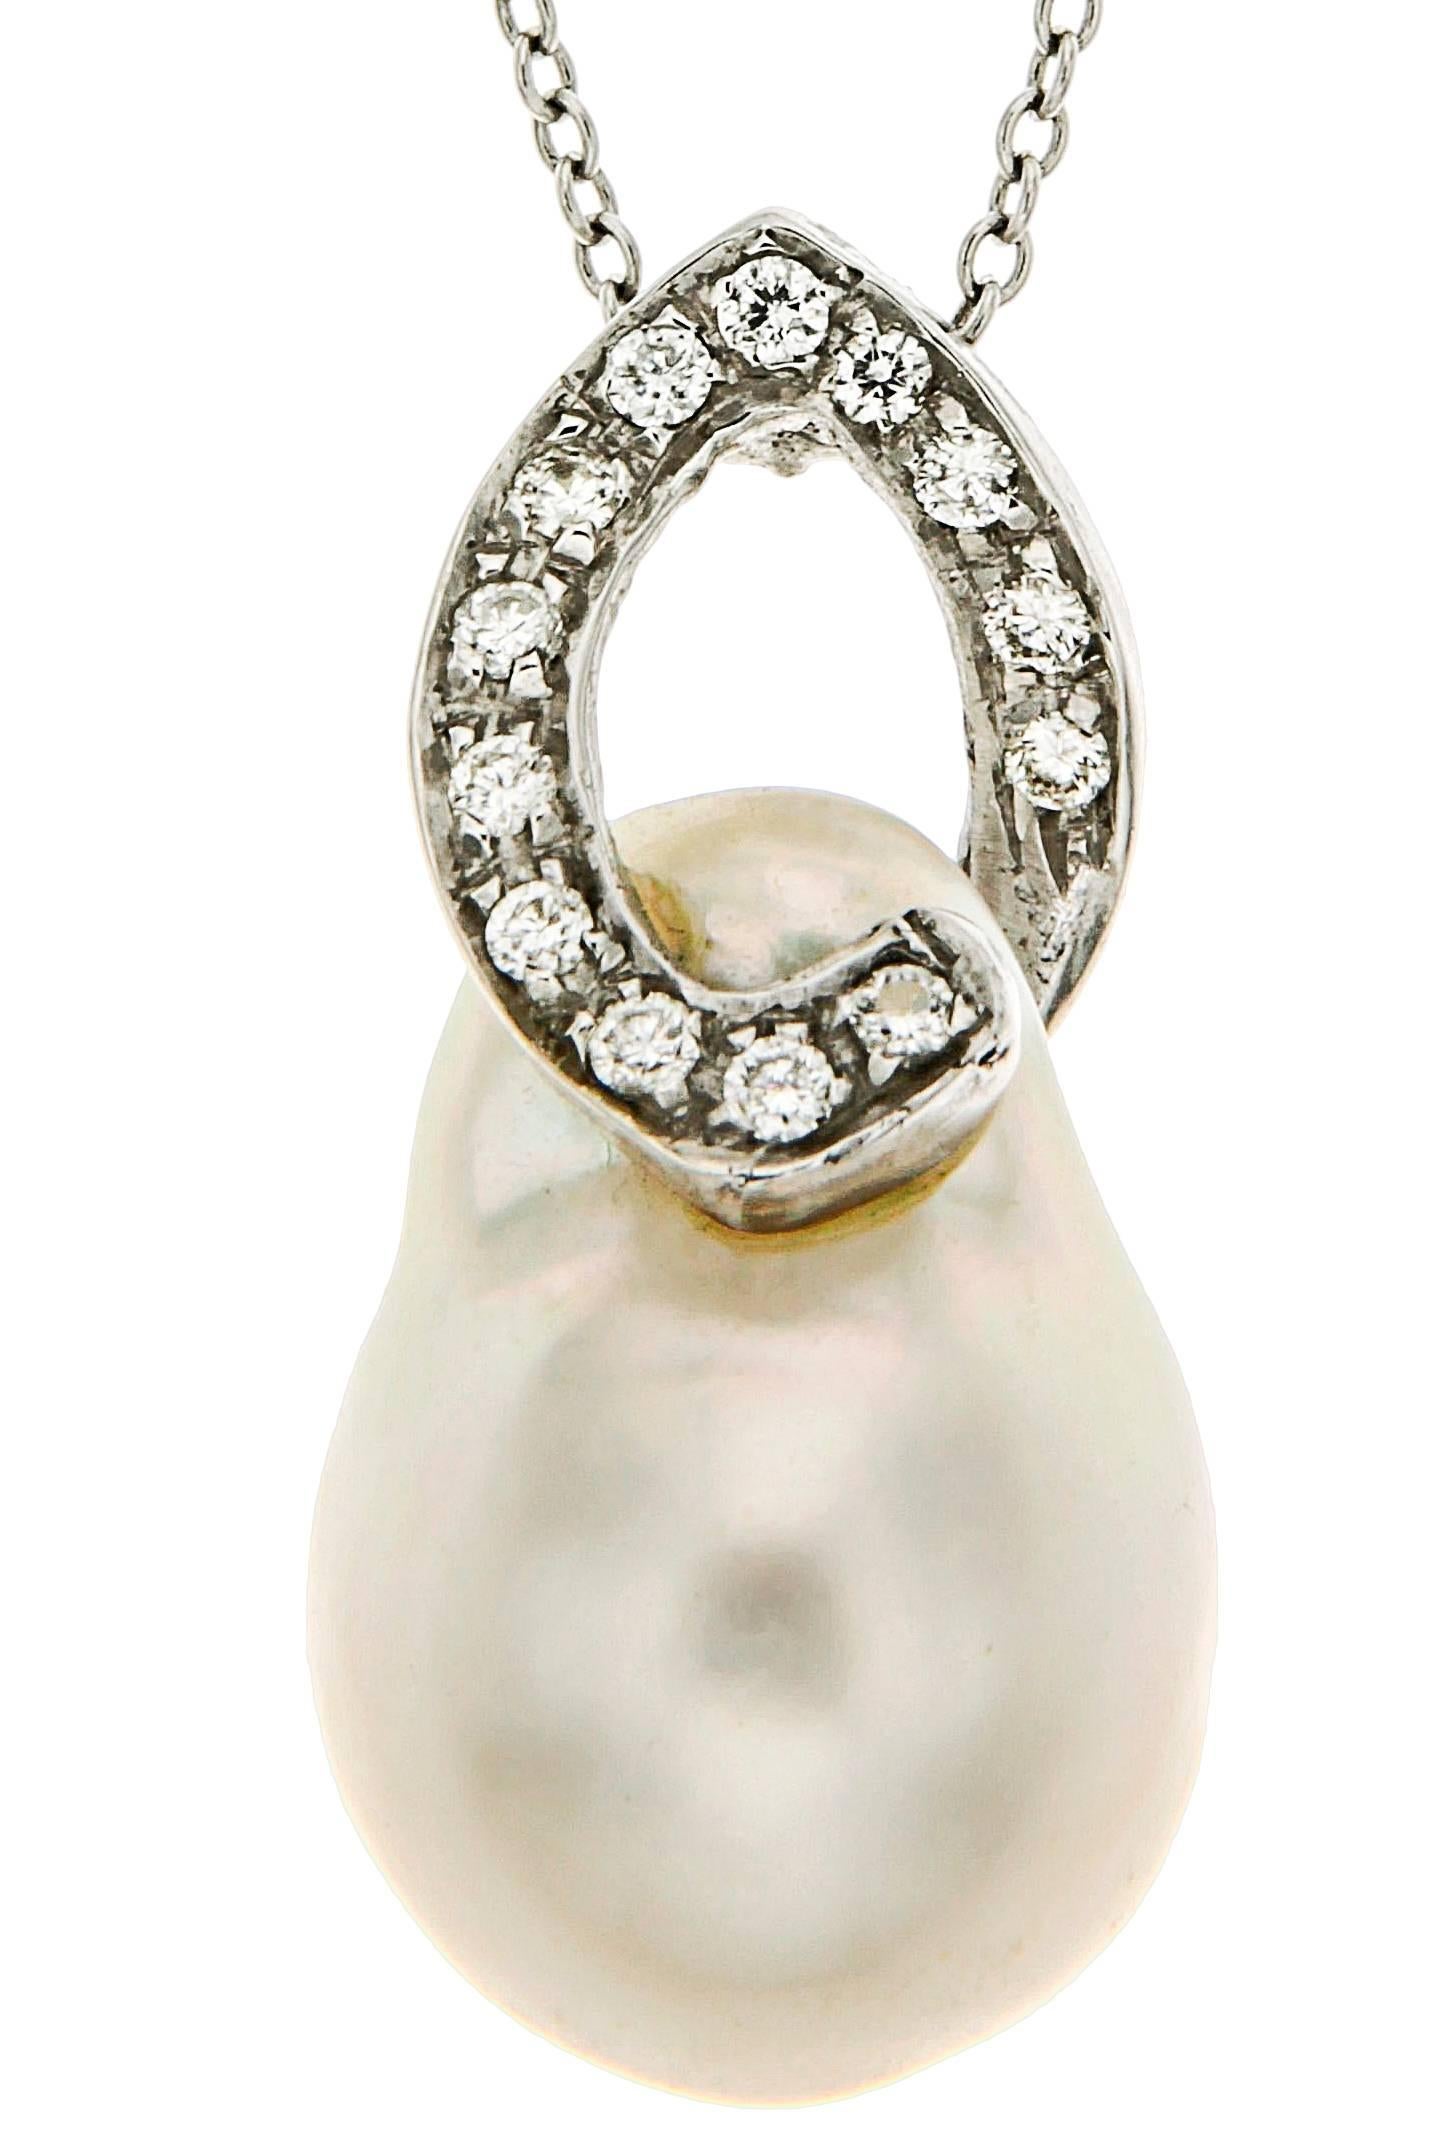 Atemberaubende Halskette mit Anhänger aus 18 Karat Weißgold mit einer eleganten australischen Perle in Kombination mit Diamanten.
Handgefertigt in Italien und gekennzeichnet mit der 18-karätigen Goldmarke 750 und der Botta Gioielli-Marke